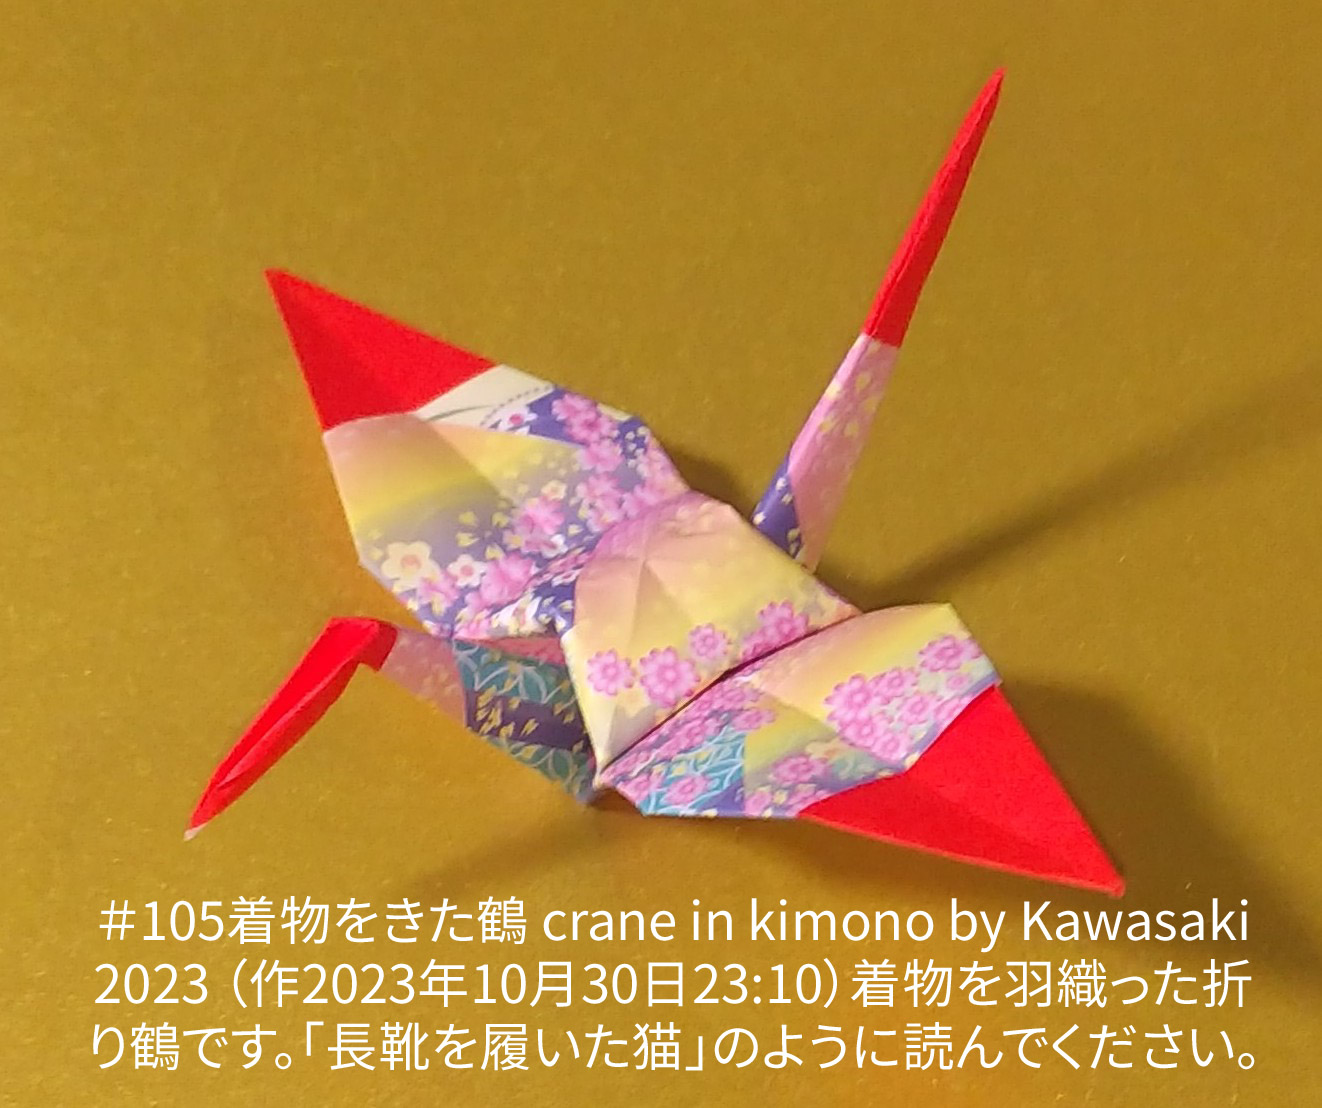 2023/10/31(Tue) 10:44「＃105着物をきた鶴 crane in kimono（2023年10月30日23:10）」川崎敏和 T.Kawasaki
（創作者 Author：川崎敏和 T.Kawasaki,　製作者 Folder：川崎敏和 T.Kawasaki ,　出典 Source：2023年川崎敏和折り紙キット＃105）
 着物を羽織った折り鶴です。｢長靴を履いた猫｣のように読んでください。｢＃102蜘蛛の巣~中間~（作品名変更予定）｣からの派生作品です。